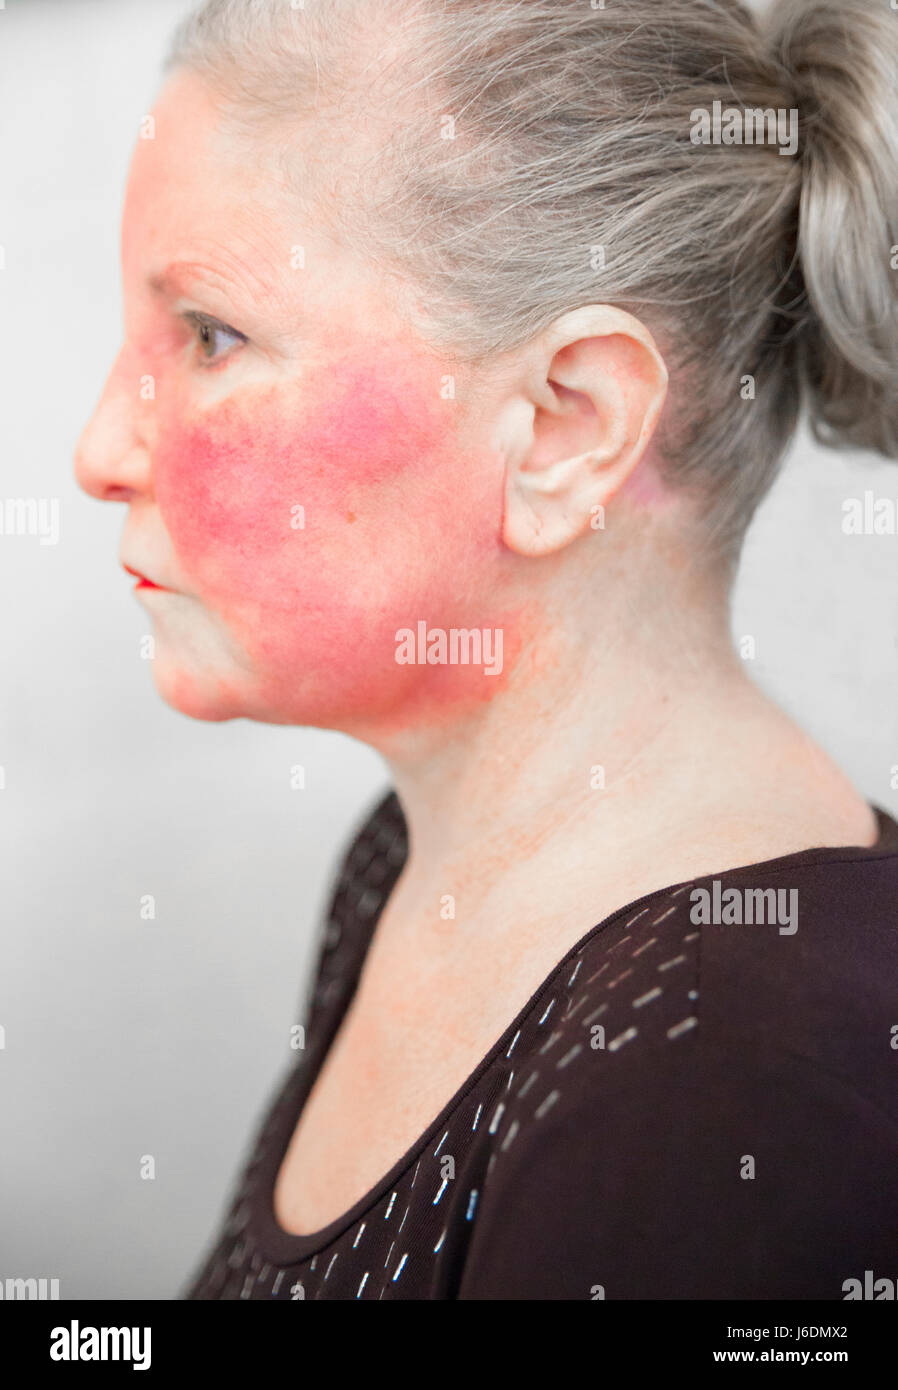 Vista lateral de una mujer caucásica en sus finales de los años 50 tiene una enfermedad autoinmune que ha causado una grave enrojecimiento en el rostro. Tiro con Canon 5D Mark 3 Foto de stock